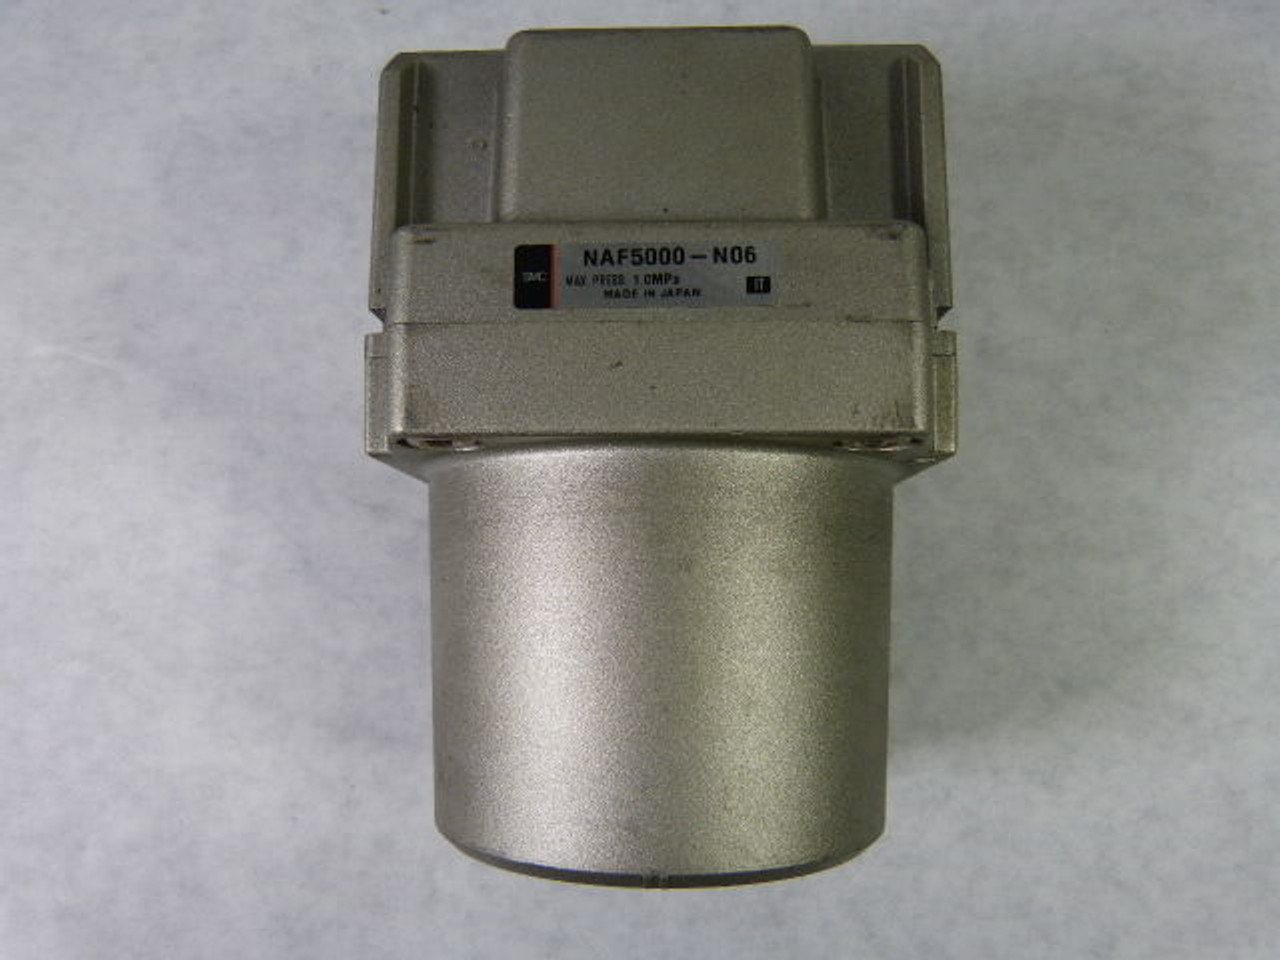 SMC NAF5000-N06 Pneumatic Filter USED